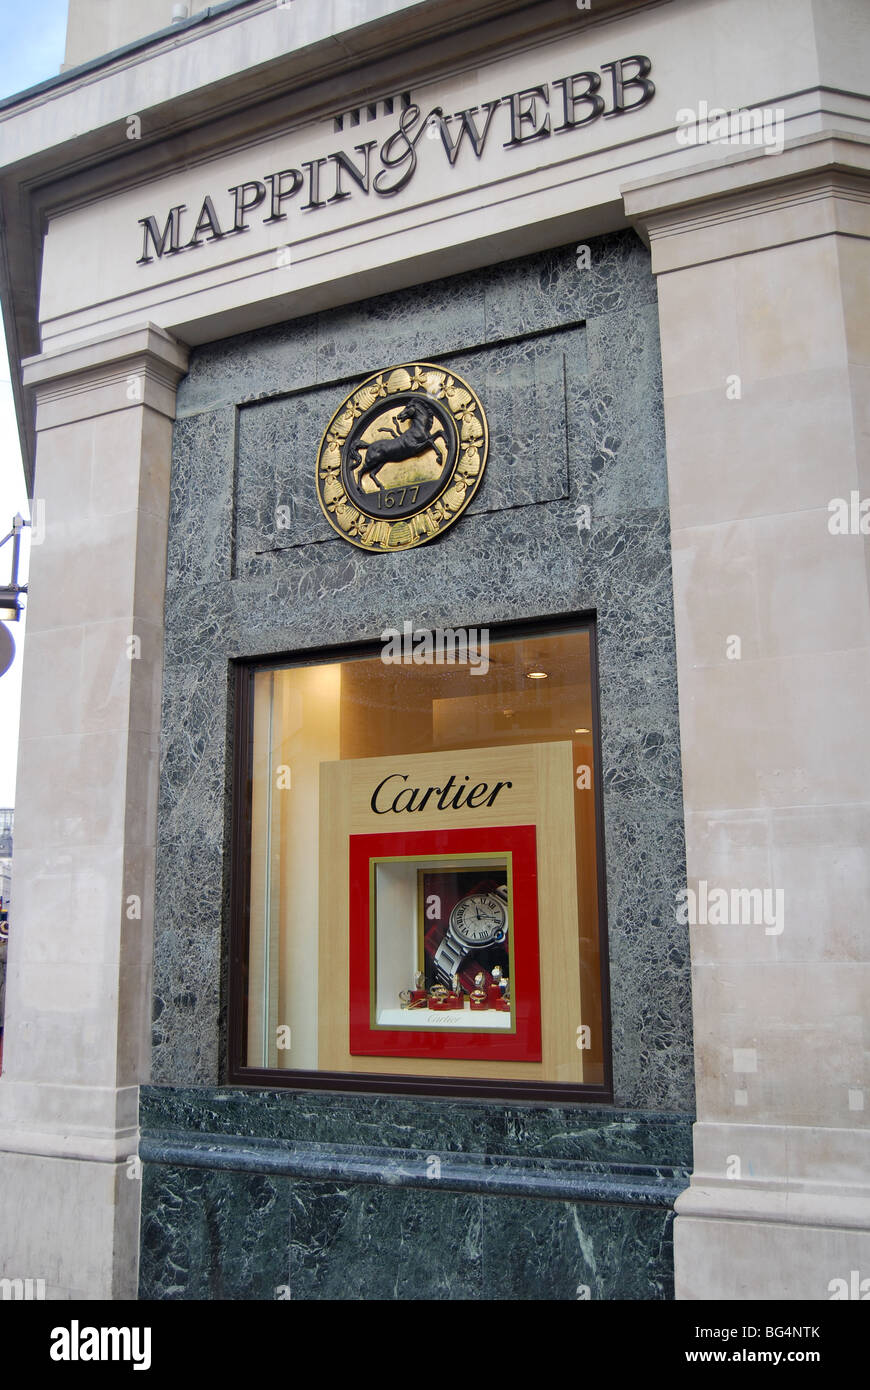 Cartier Mappin & Webb Juweliere Stockfoto